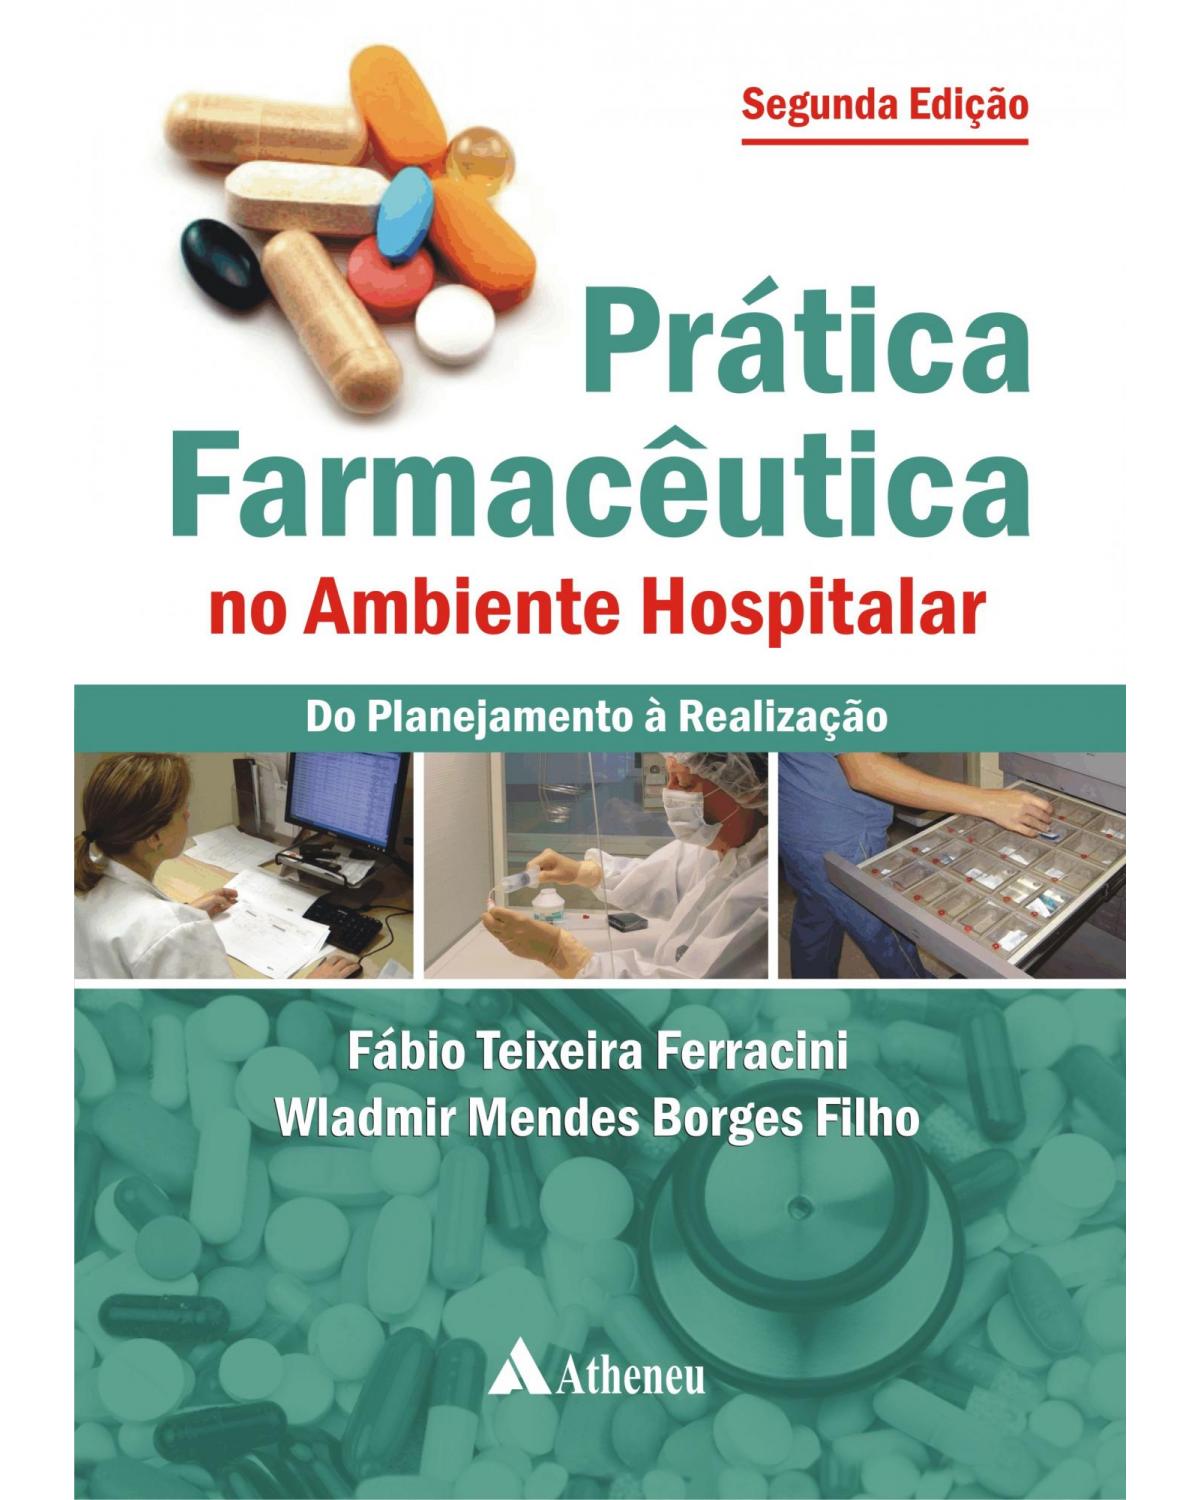 Prática farmacêutica no ambiente hospitalar - do planejamento à realização - 2ª Edição | 2010